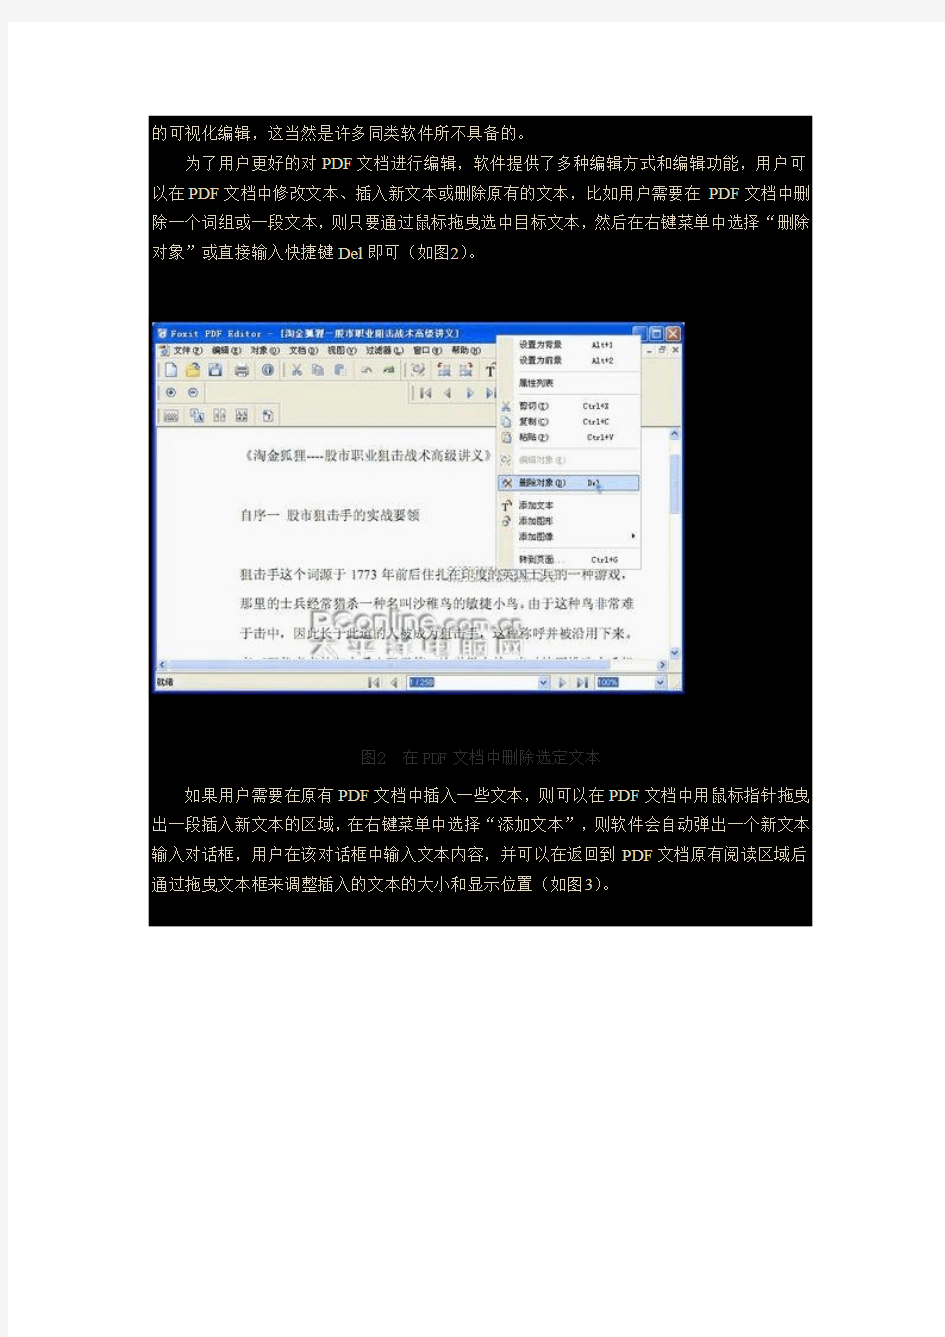 福昕PDF编辑器 使用指南 (中文版)